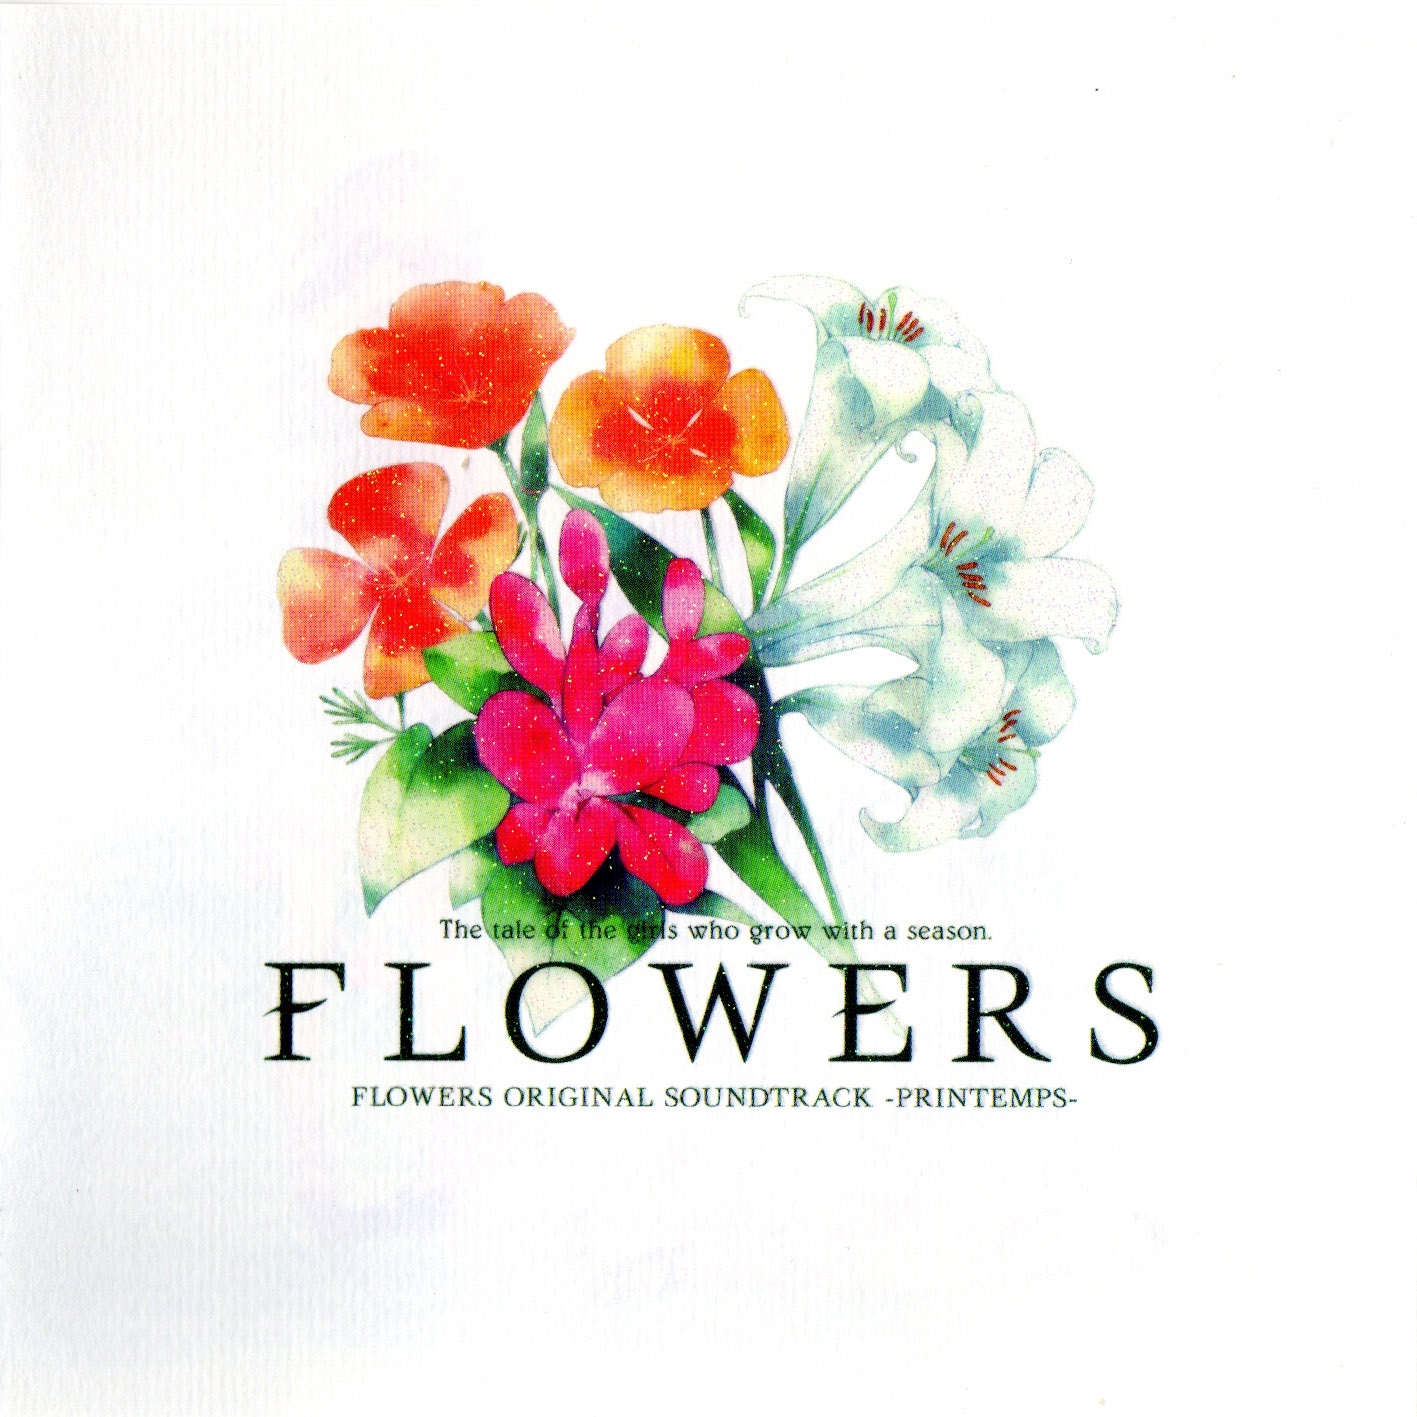 FLOWERS ORIGINAL SOUNDTRACK -PRINTEMPS- (2014) MP3 - Download 